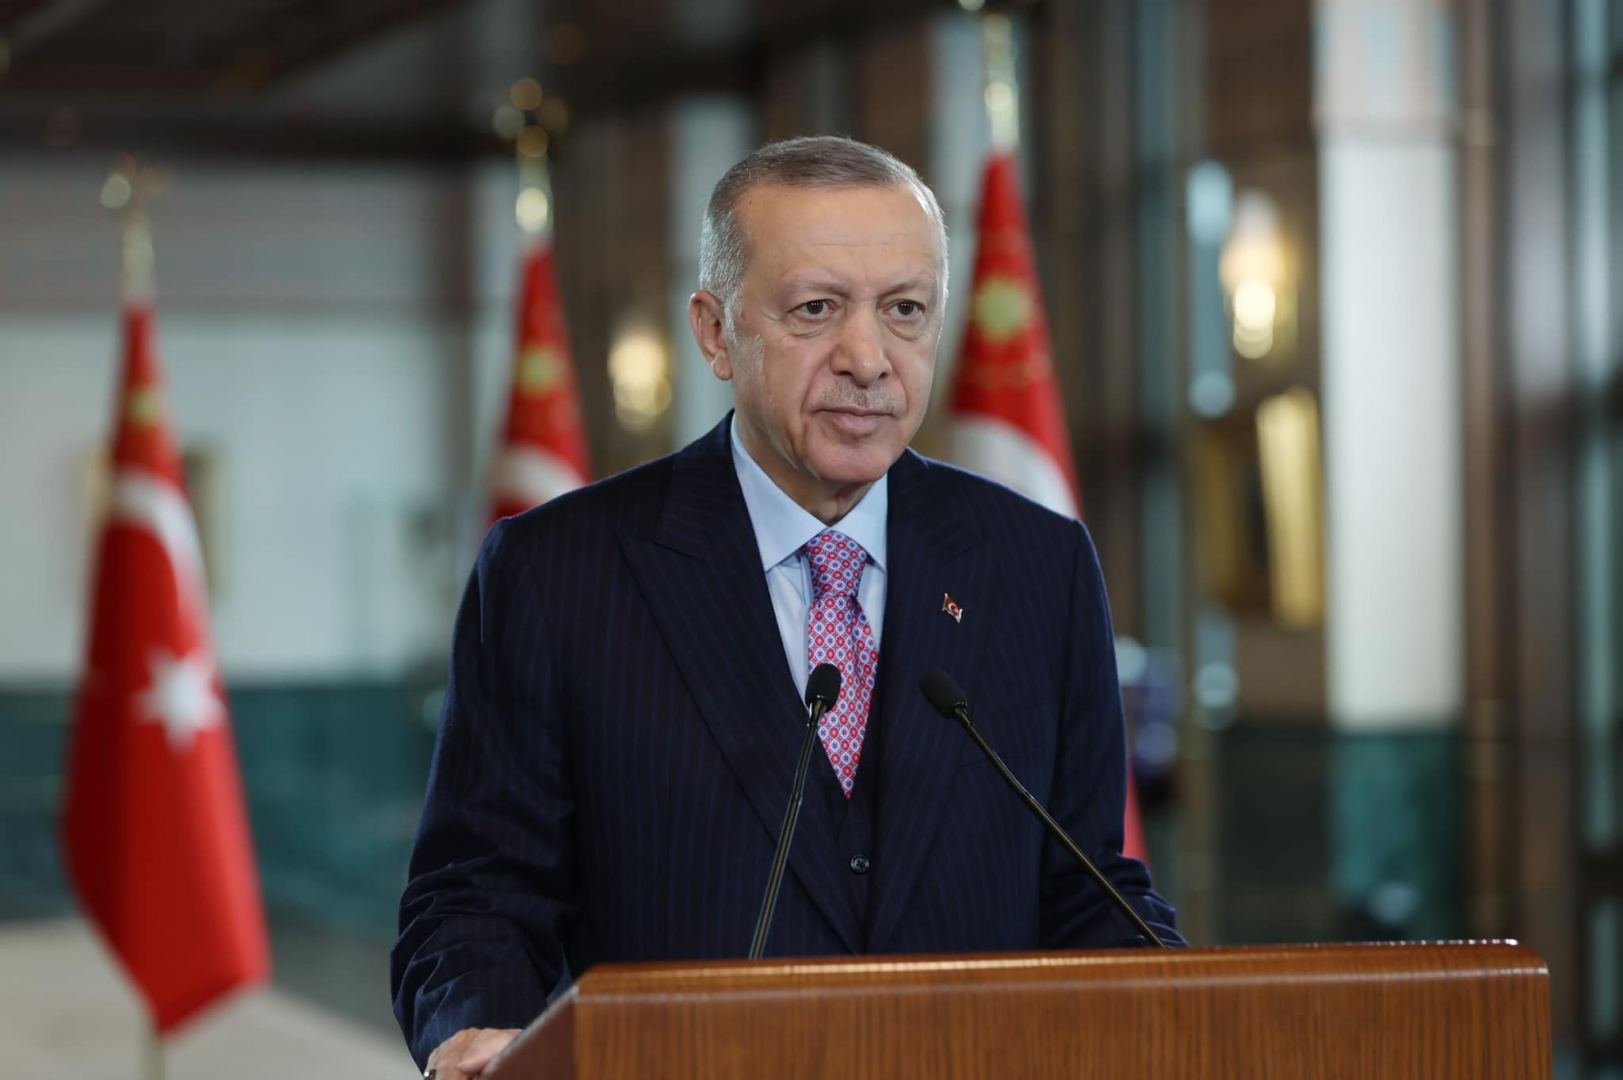 Сила стран региона проистекает из единства – Эрдоган